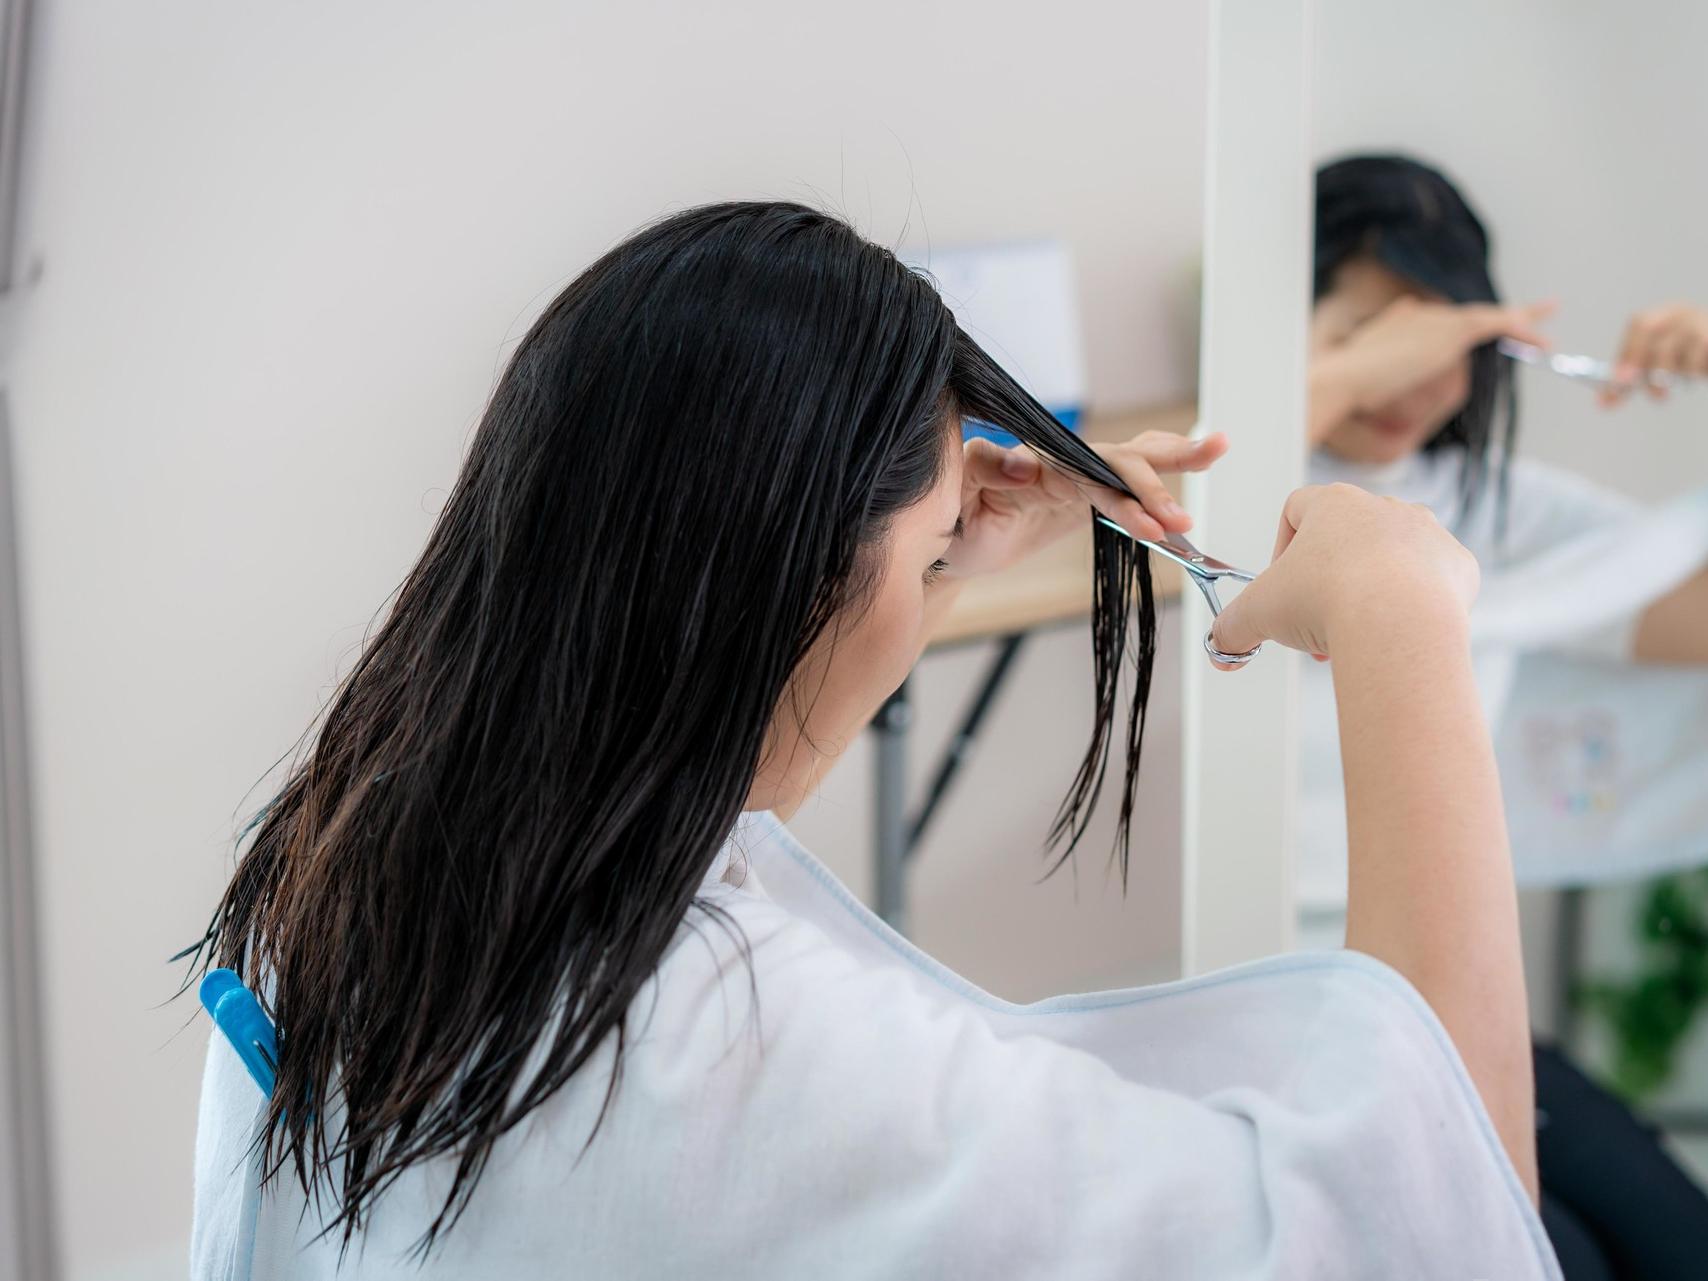 Не рискуйте: почему нельзя стричь волосы самой себе — 5 опасных последствий  | MARIECLAIRE